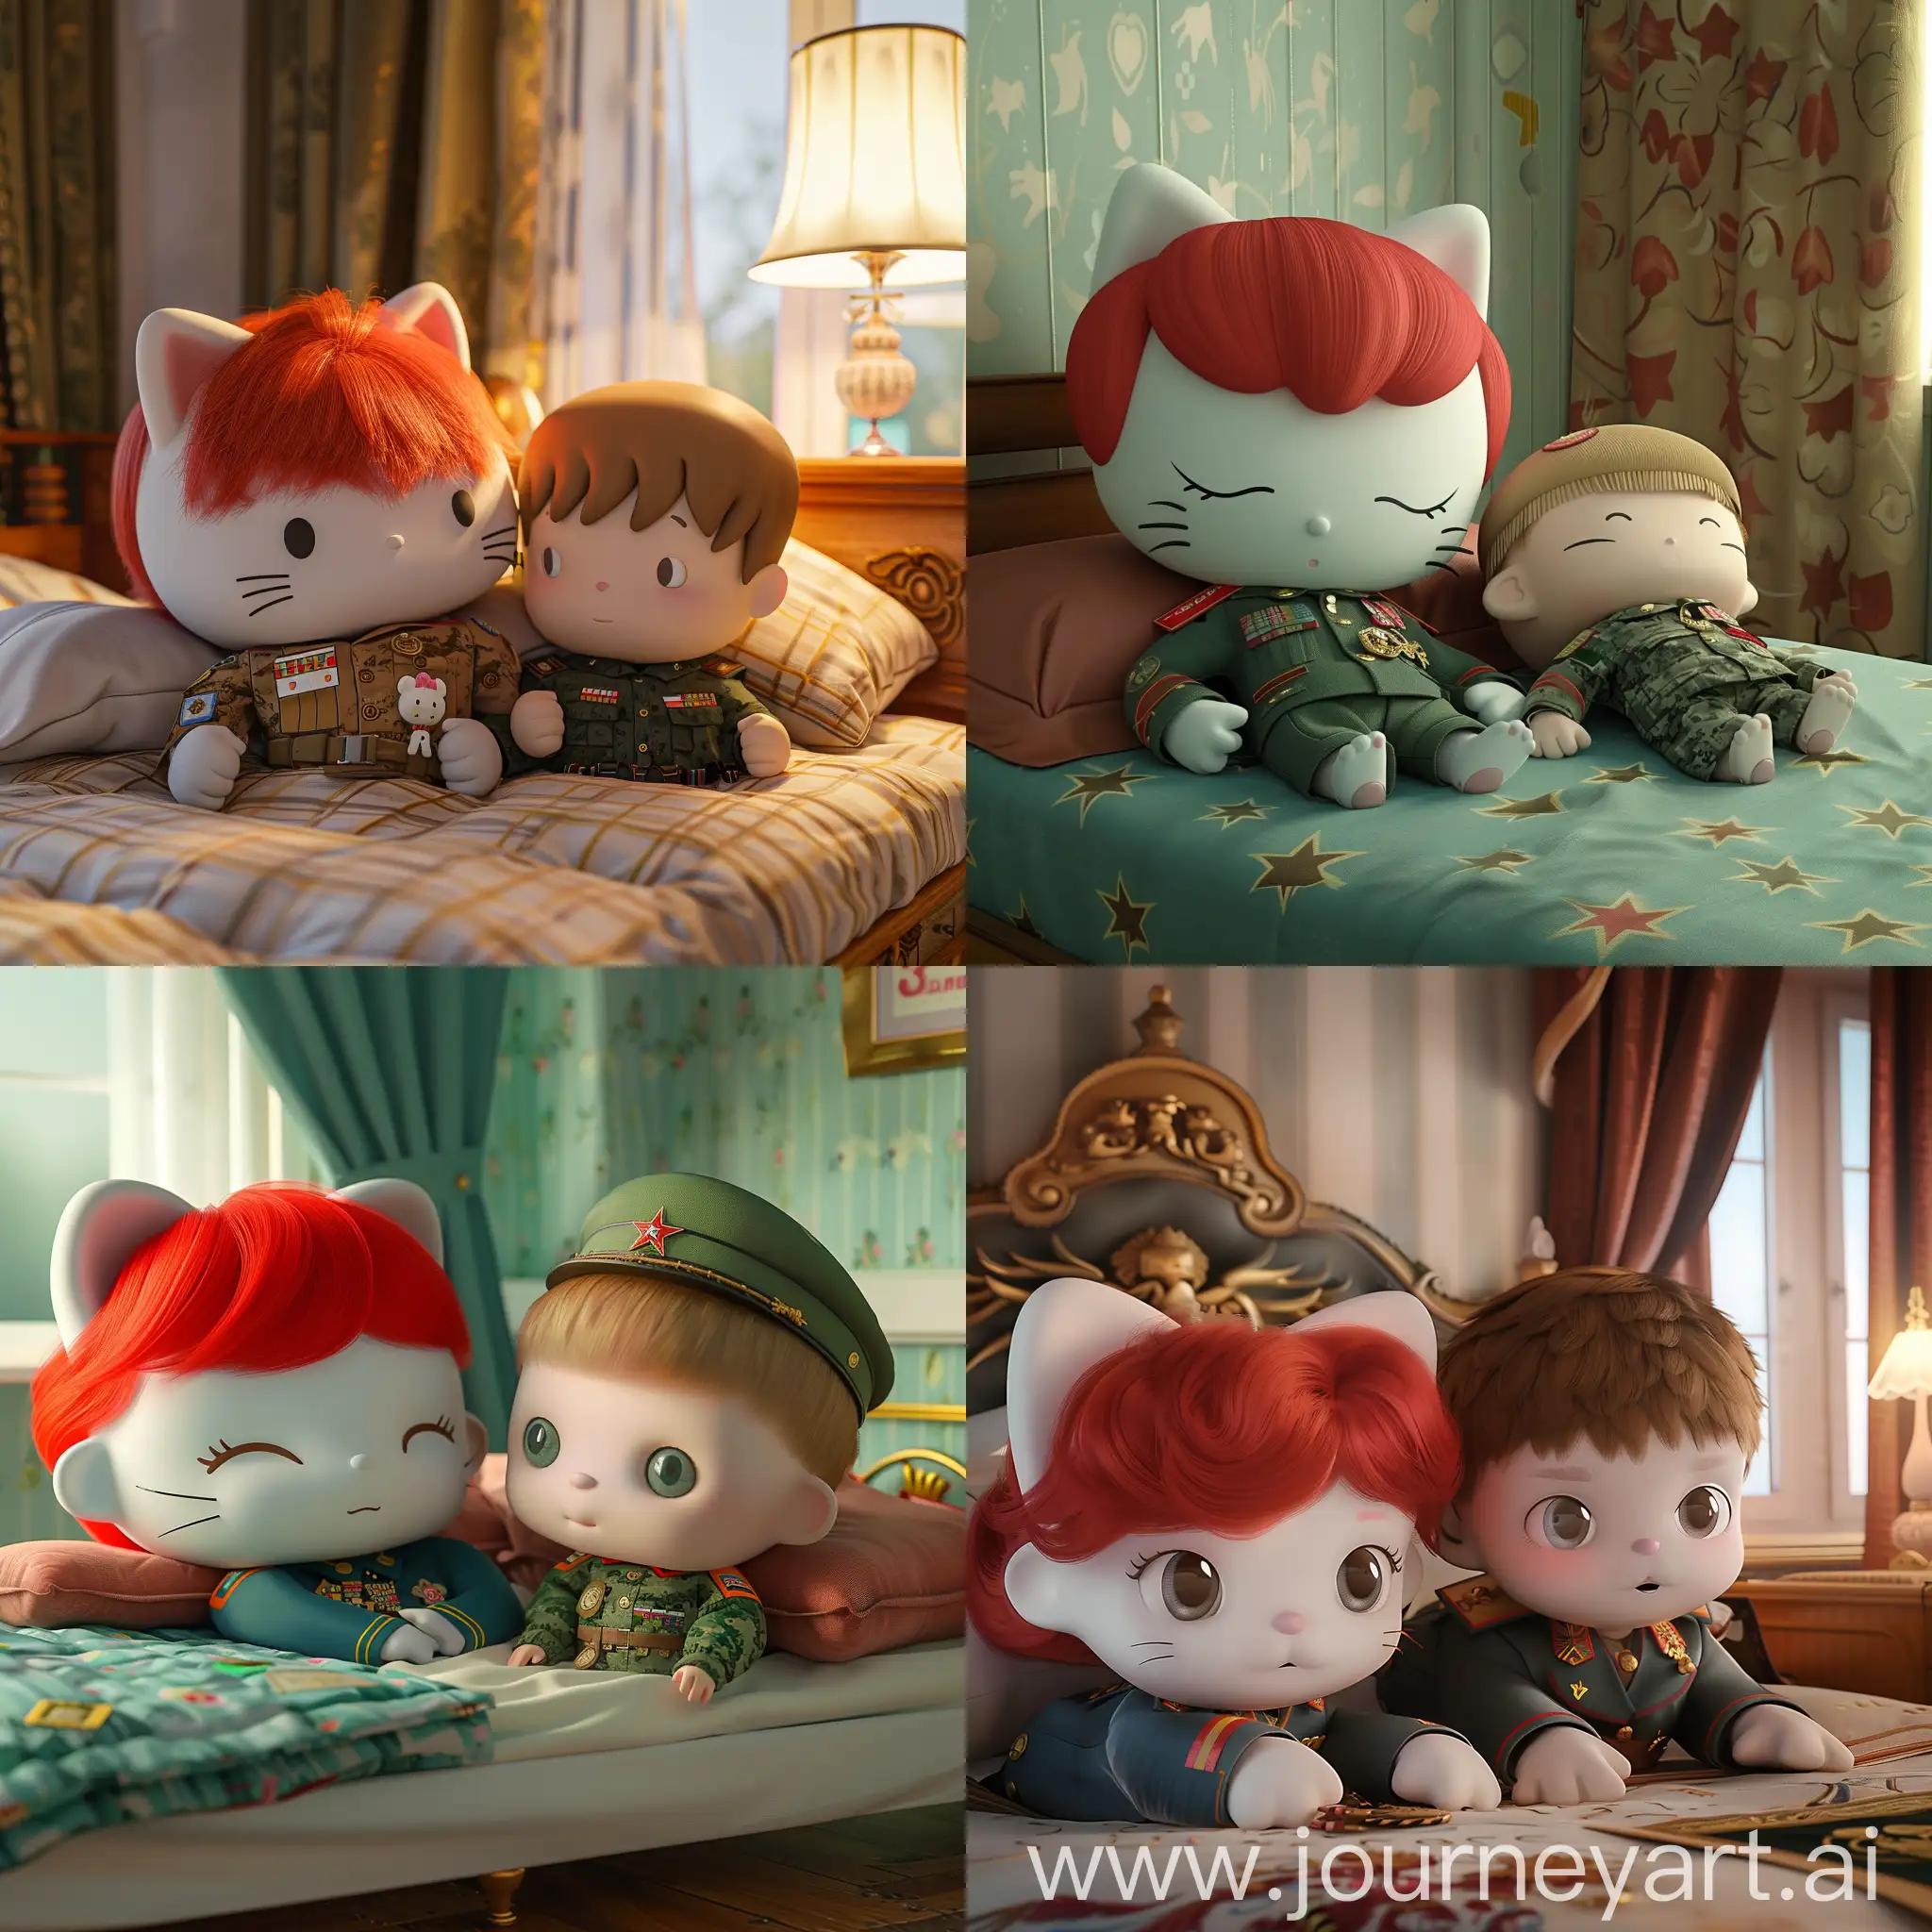 3д hello kitty с рыжими волосами, которая лежит на кровати с мальчиком hello kitty, мальчик hello kitty с короткой стрижкой и в военной форме ВСРФ